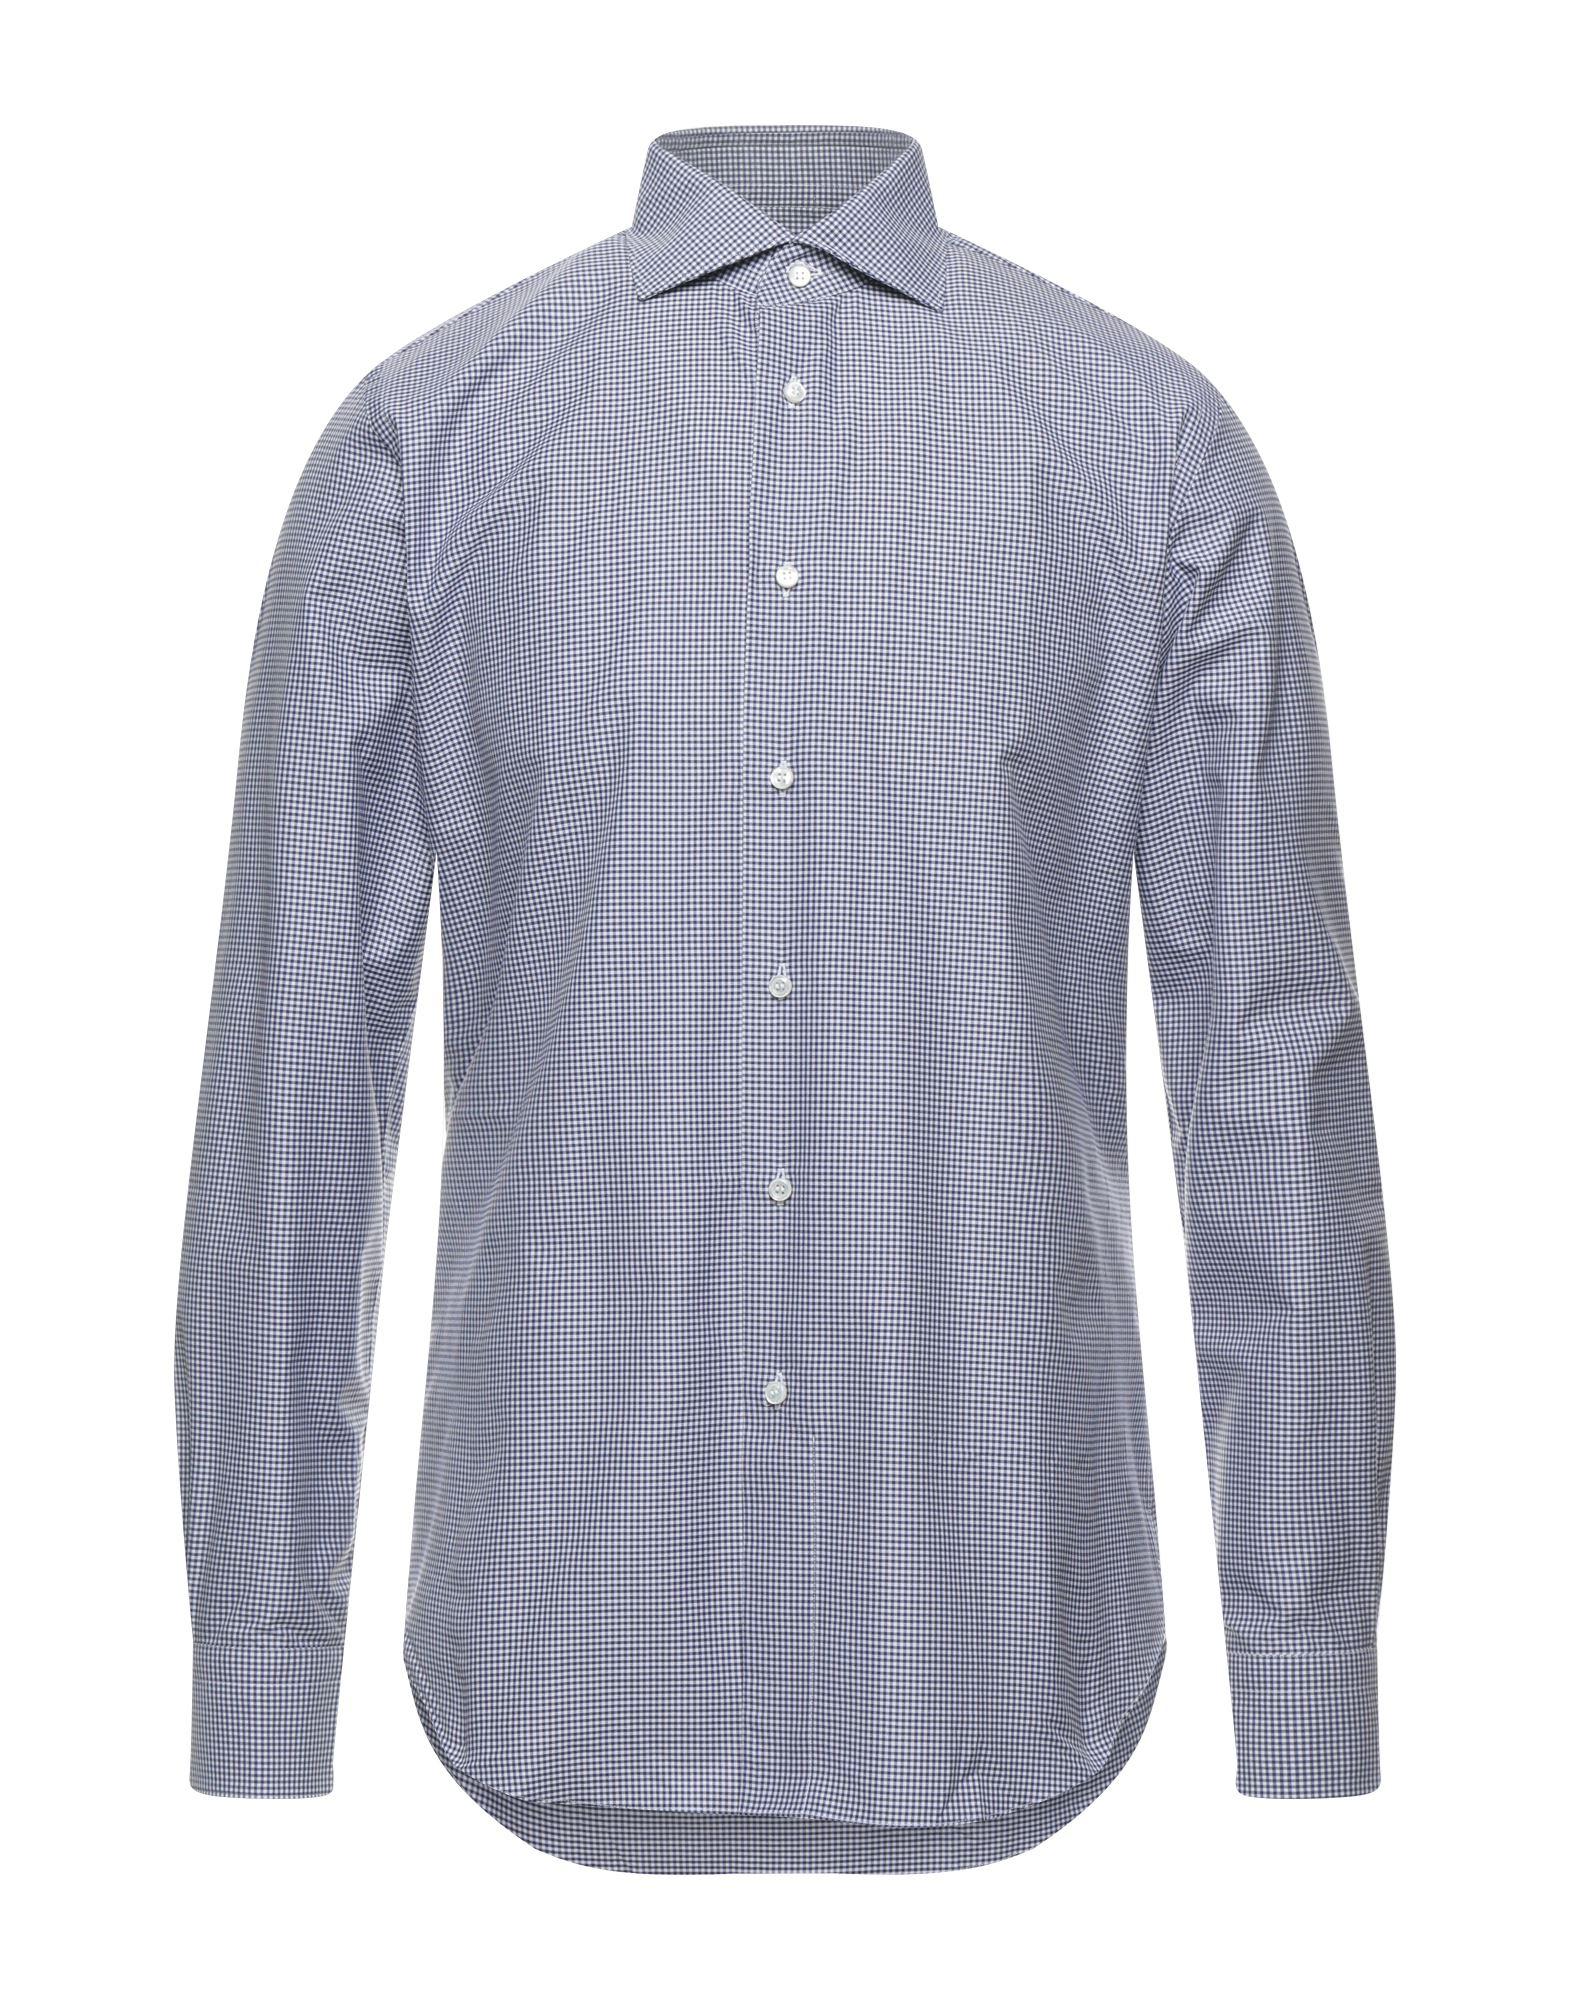 ブリオーニ(Brioni) メンズシャツ・ワイシャツ | 通販・人気ランキング 